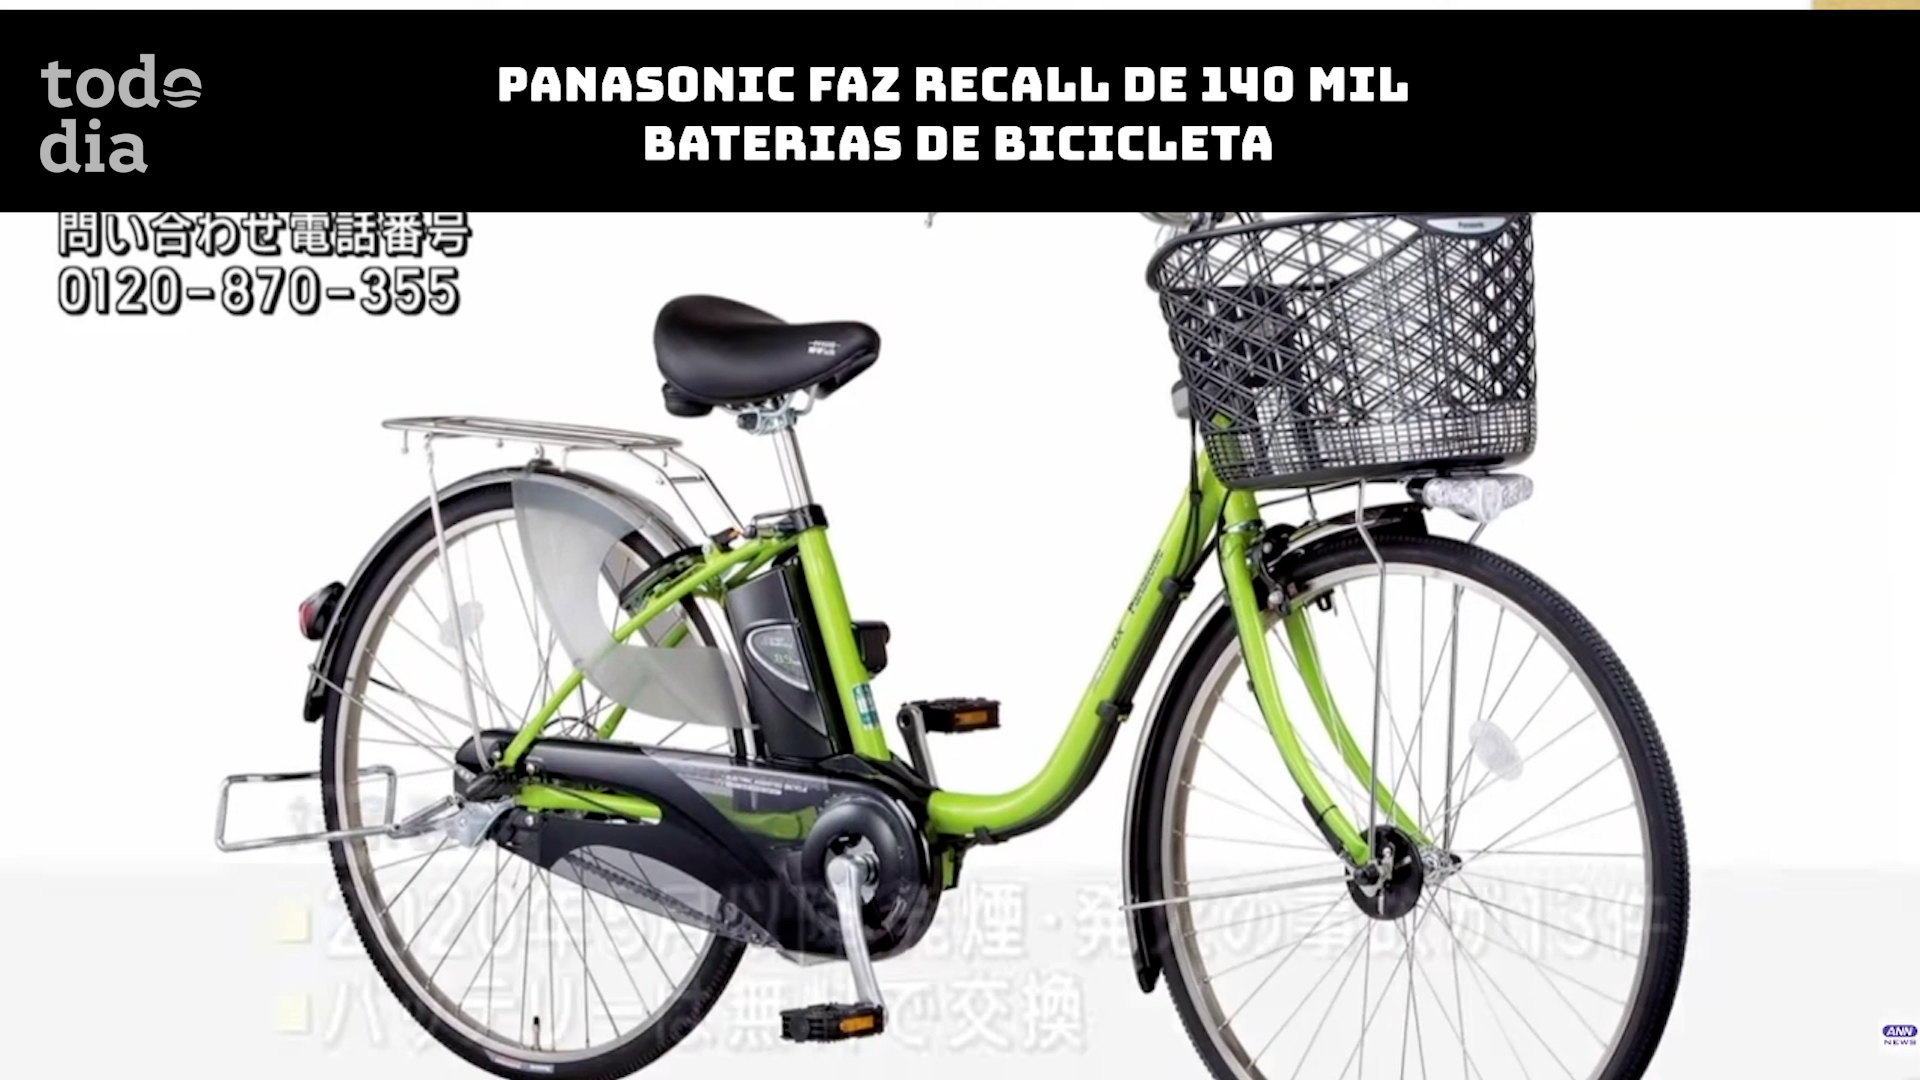 Panasonic faz recall de 140 mil baterias de bicicleta no Japão 